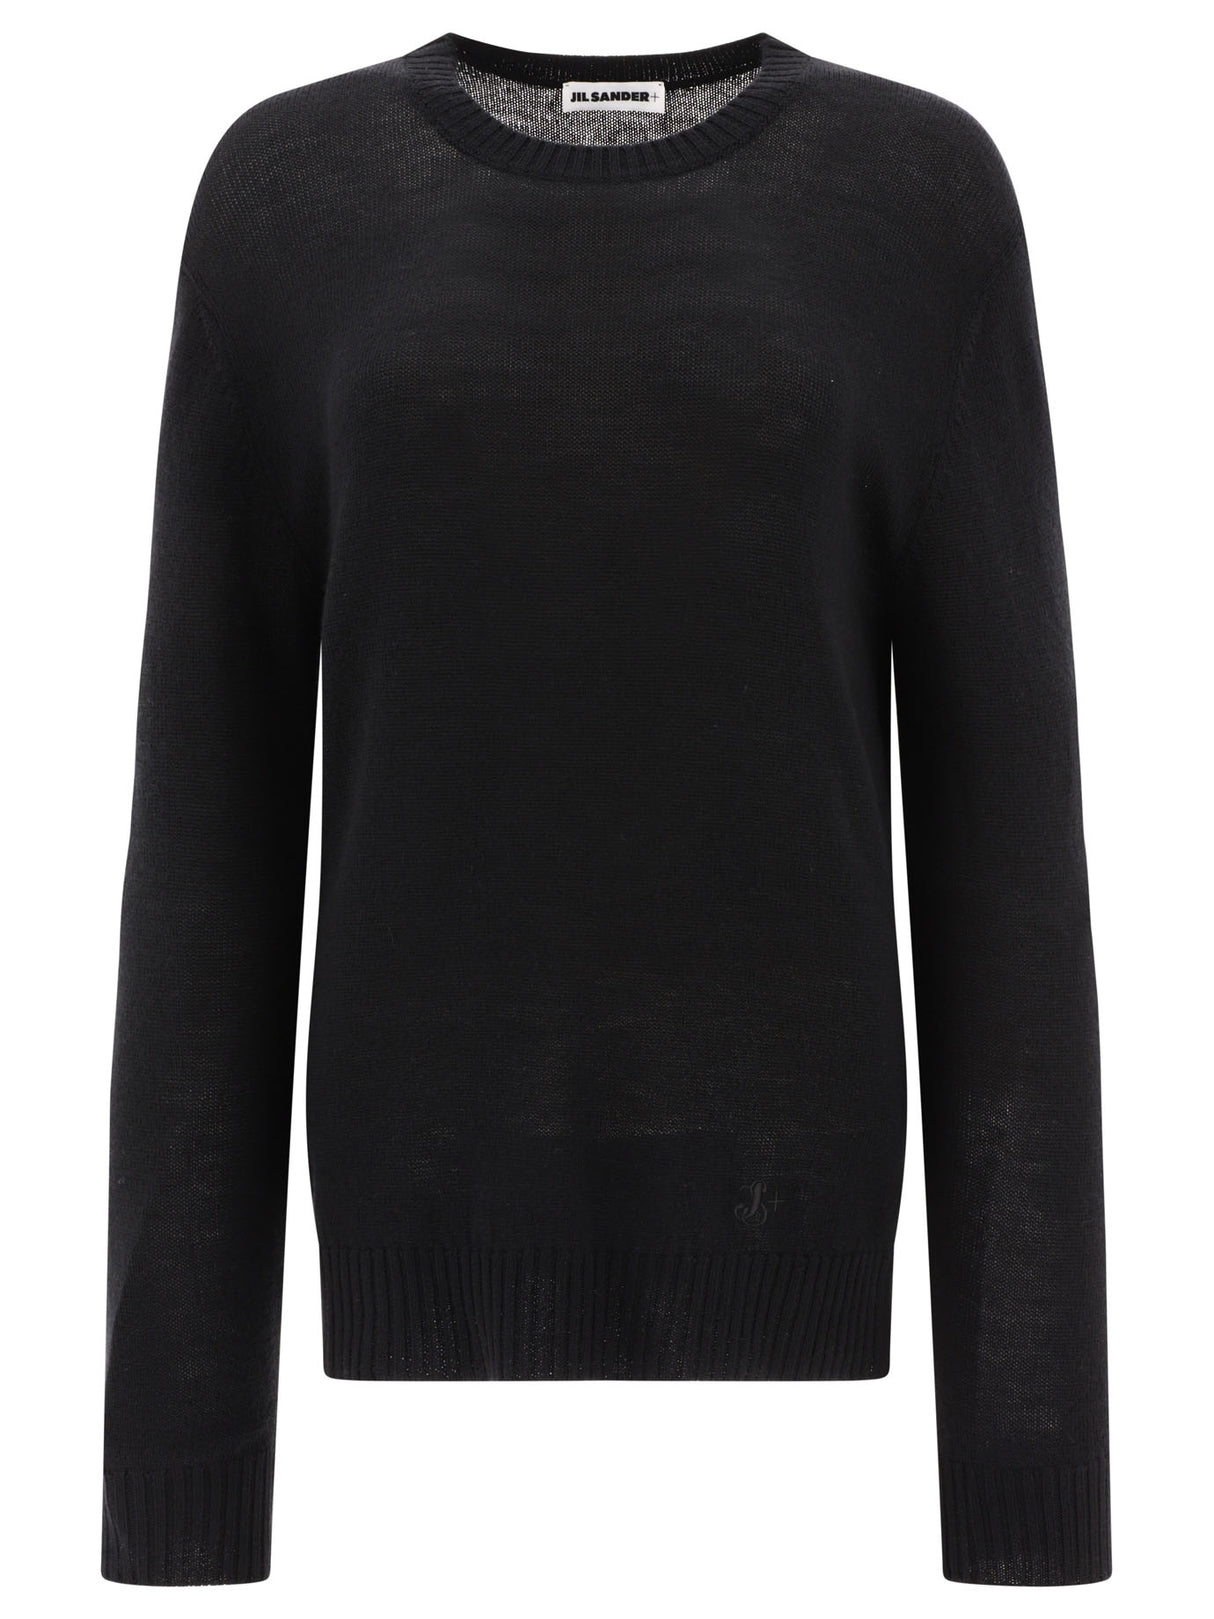 JIL SANDER Ultrafine Wool Sweater - Black